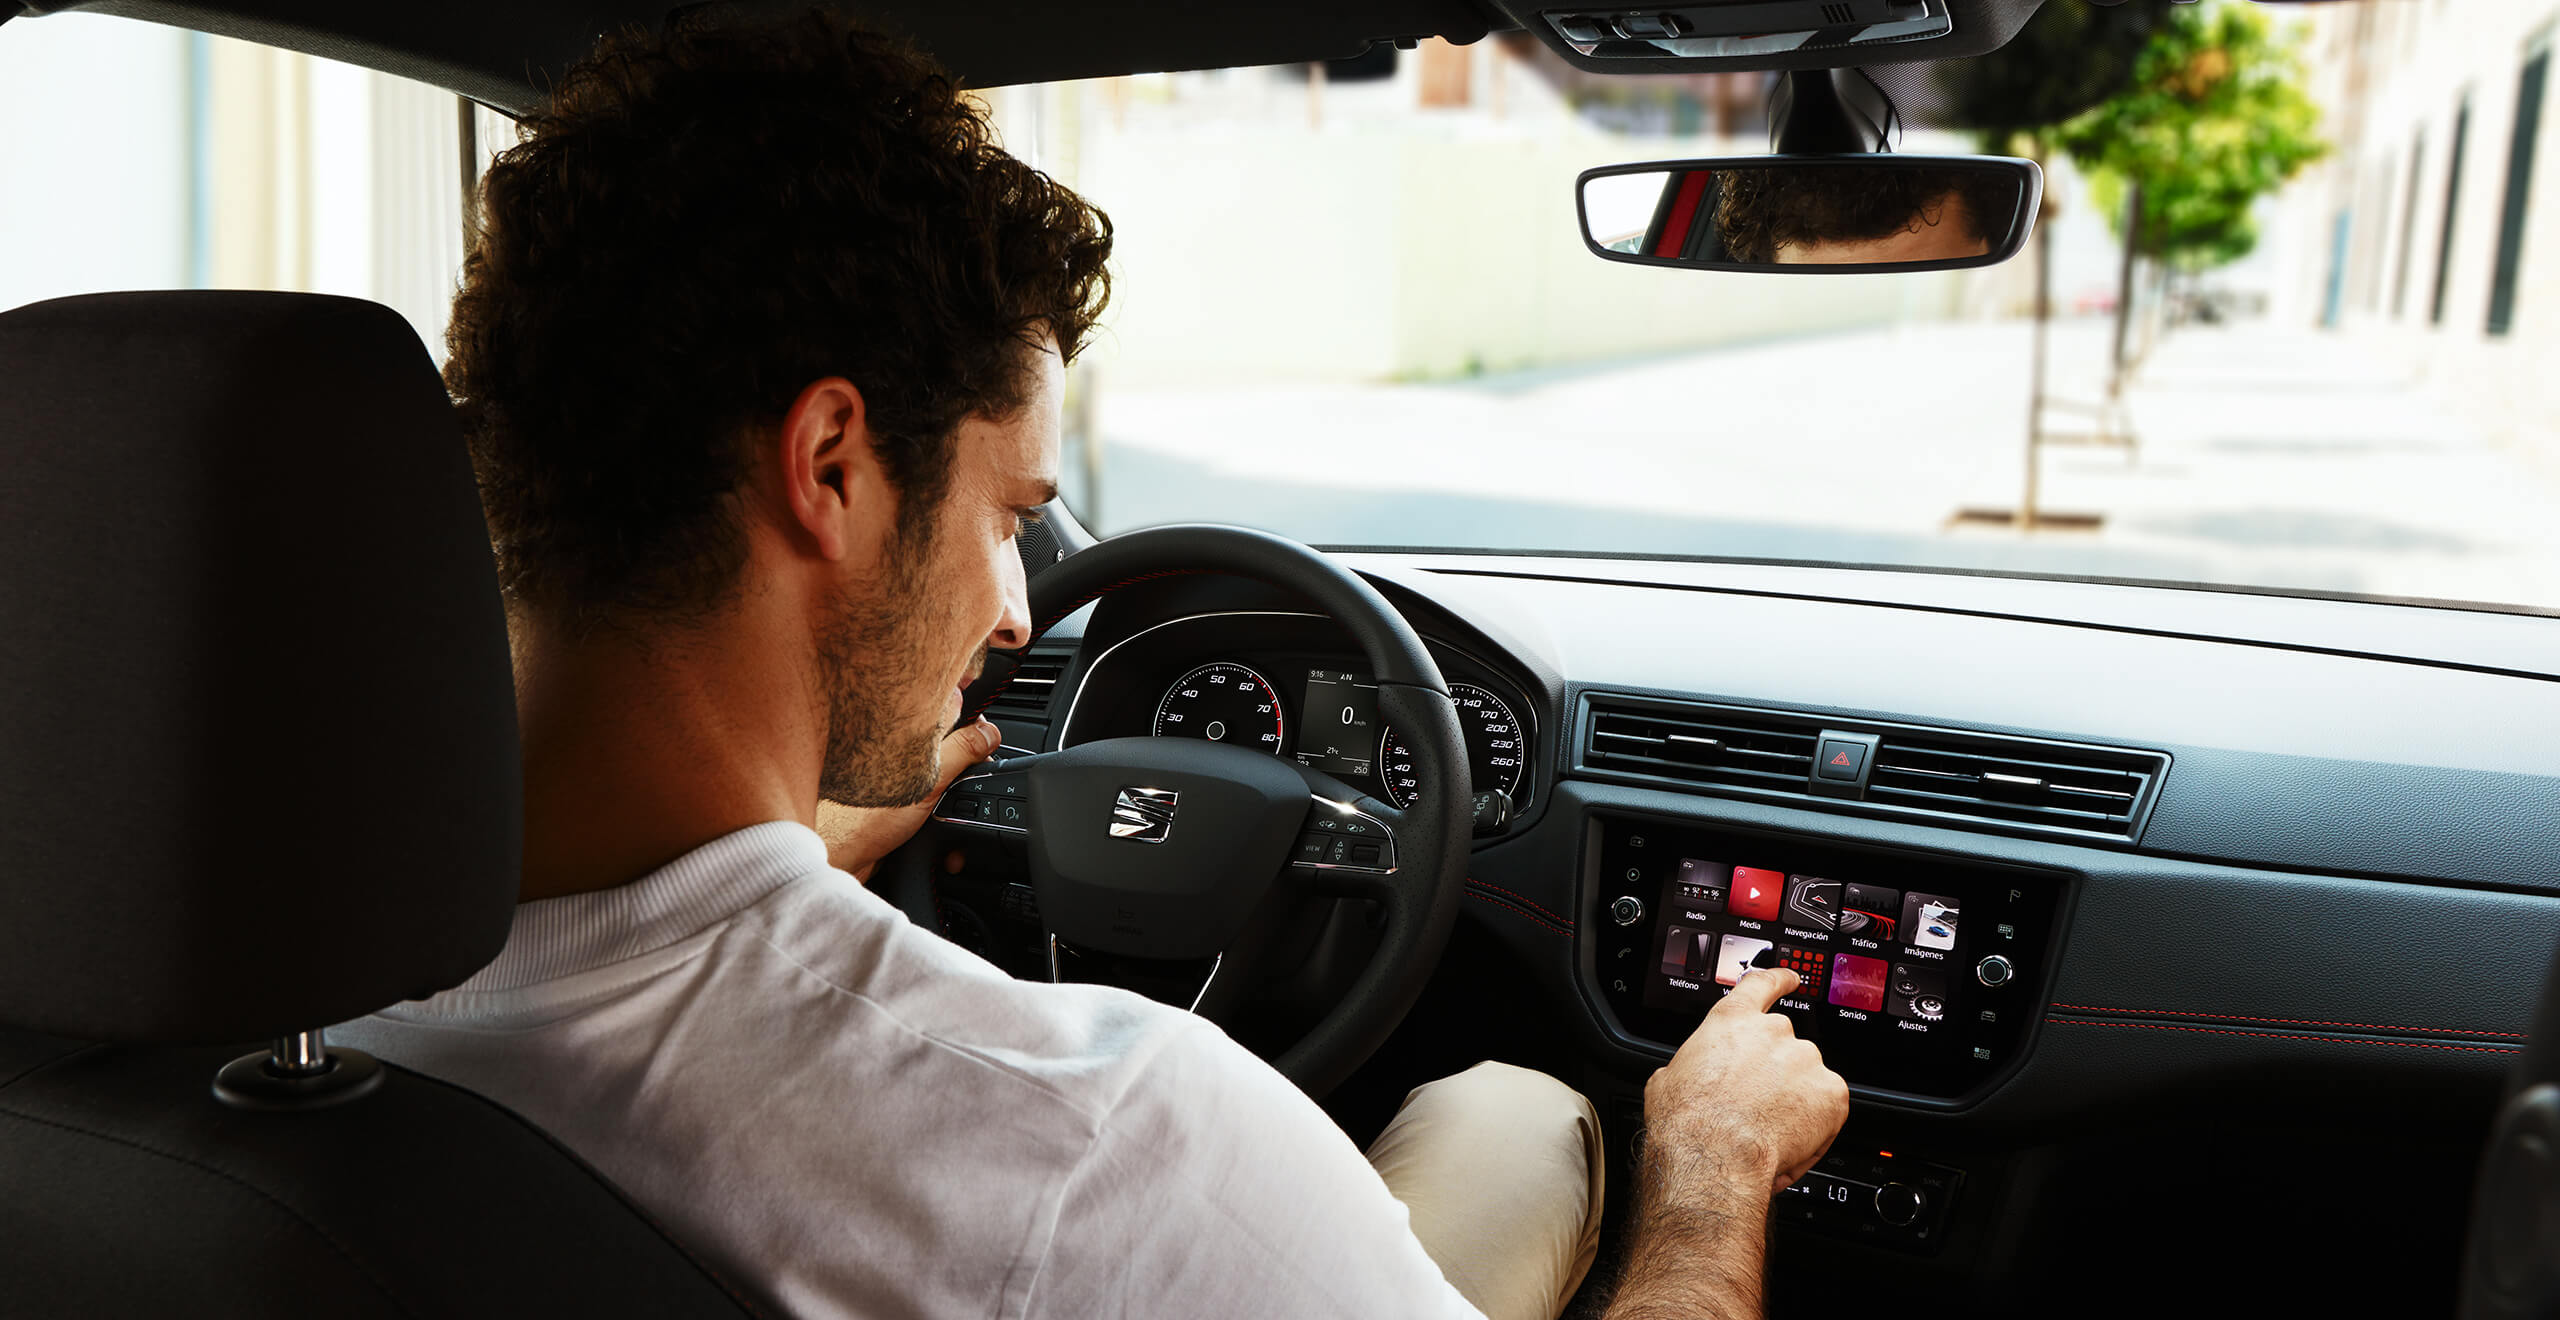 Service et entretien pour voitures neuves SEAT – vue intérieure de l’arrière, un conducteur presse un bouton sur le tableau de bord d’une voiture neuve SEAT